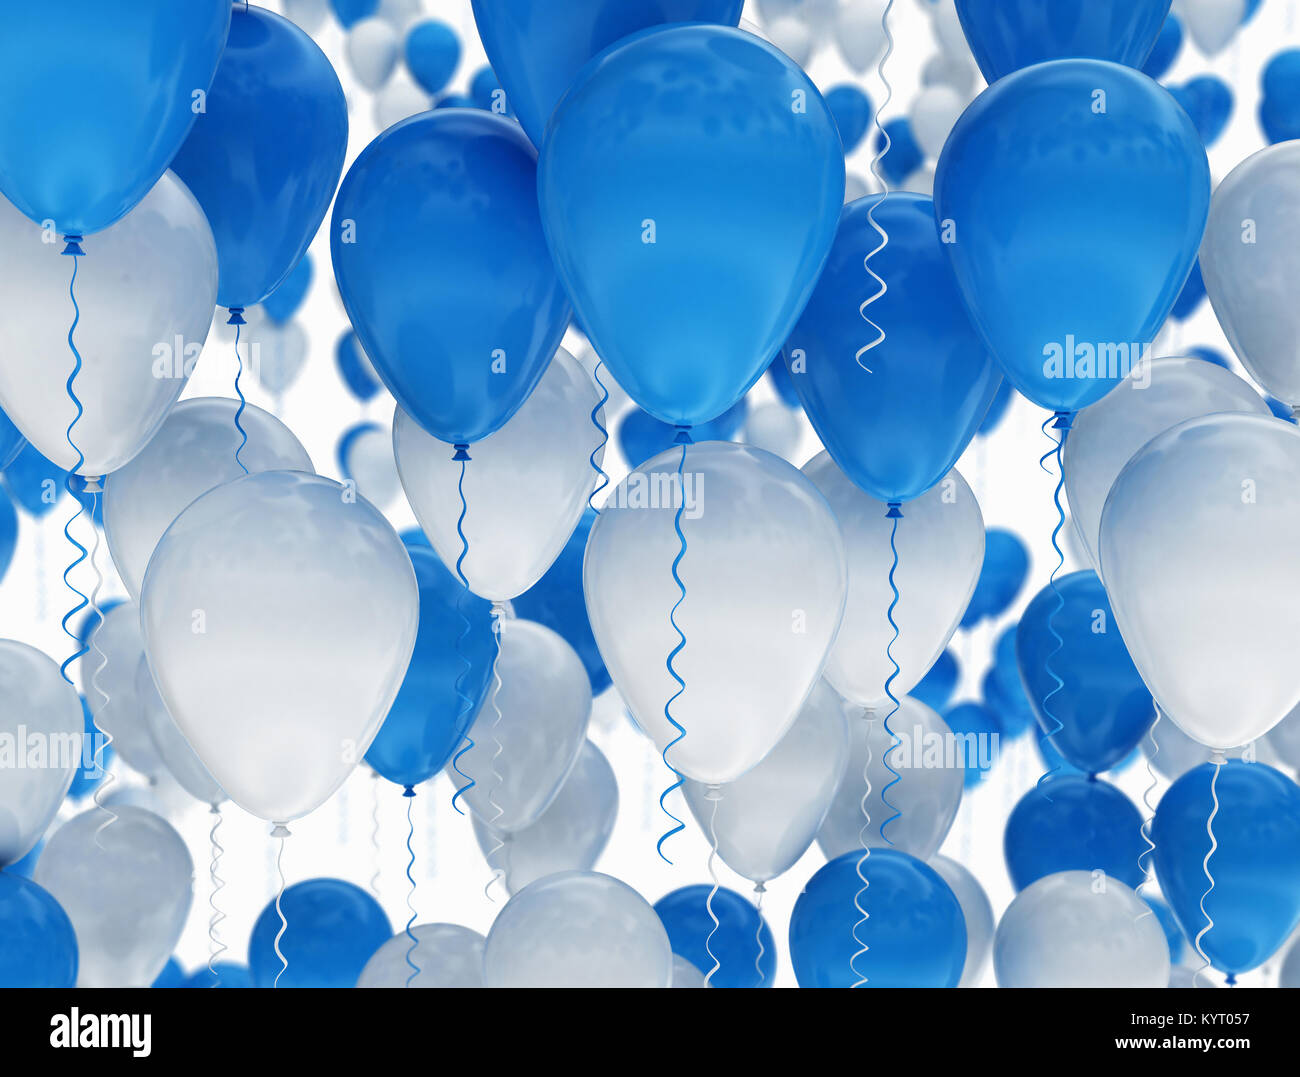 Geburtstag Luftballons blau und weiß isoliert. 3D-Render Abbildung Stockfoto